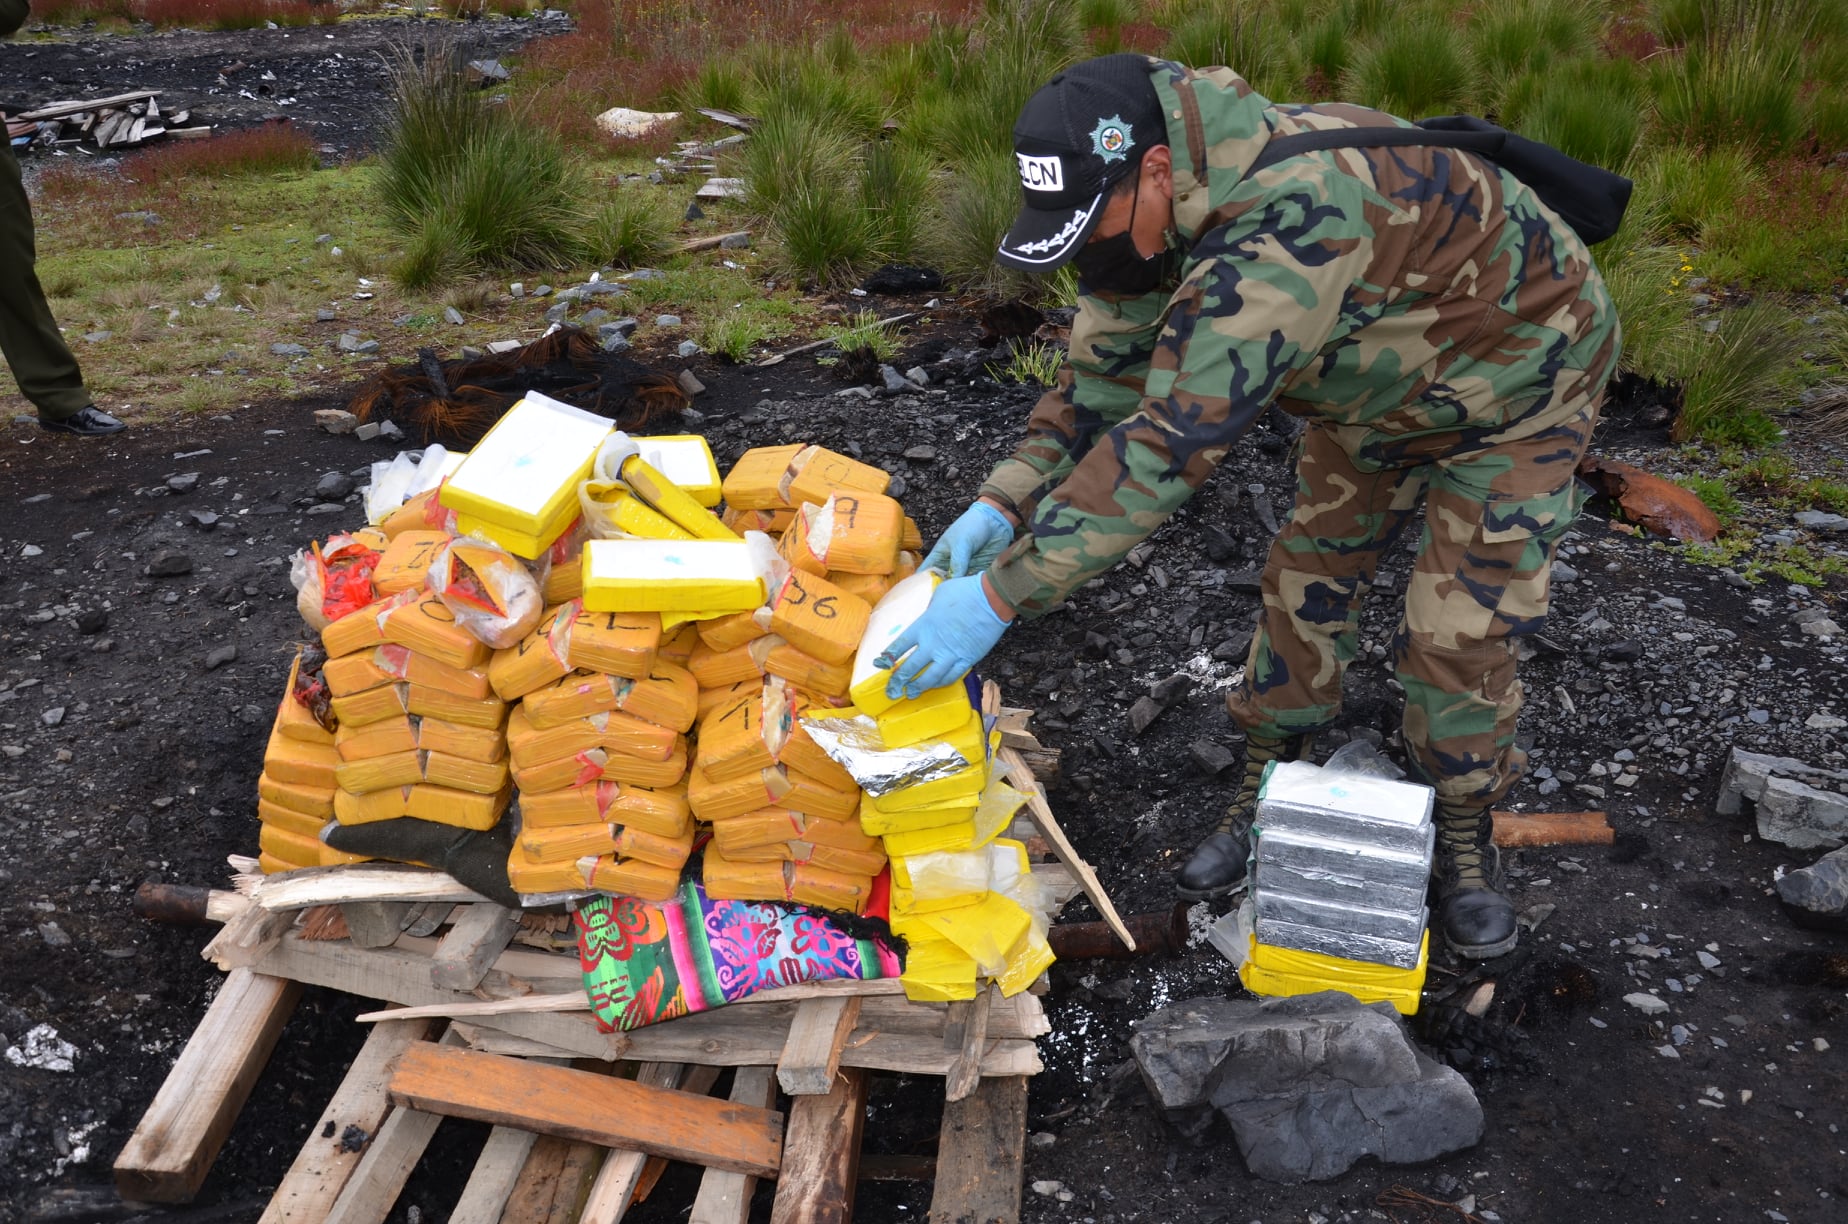 Bolívia: agentes antinarcóticos destroem mais de 2 toneladas de drogas